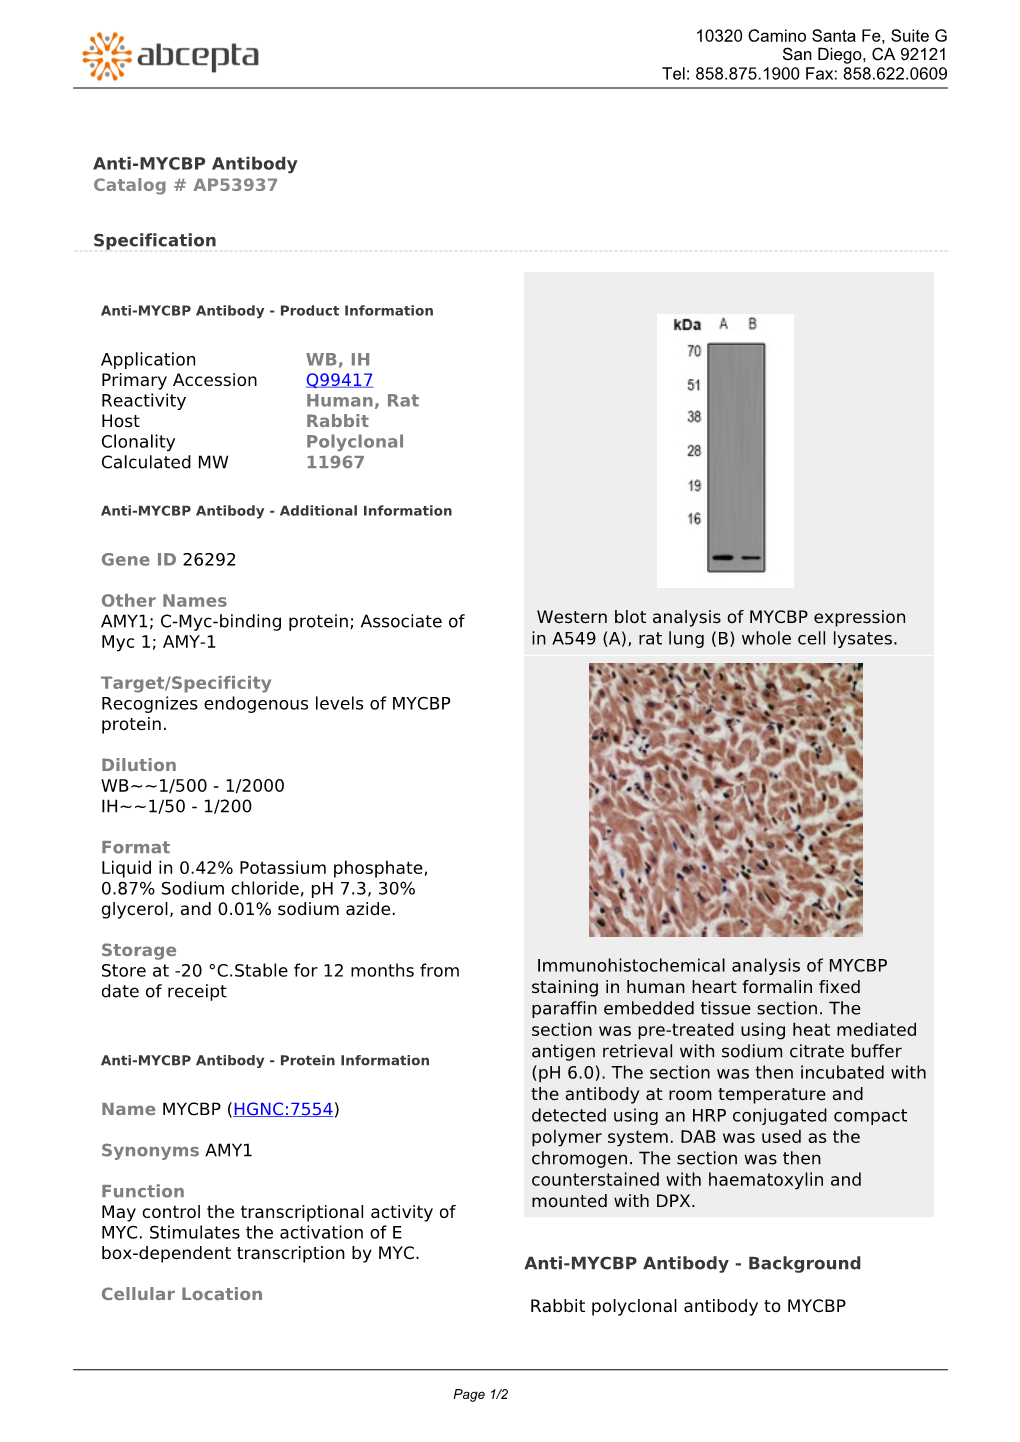 Anti-MYCBP Antibody Catalog # AP53937